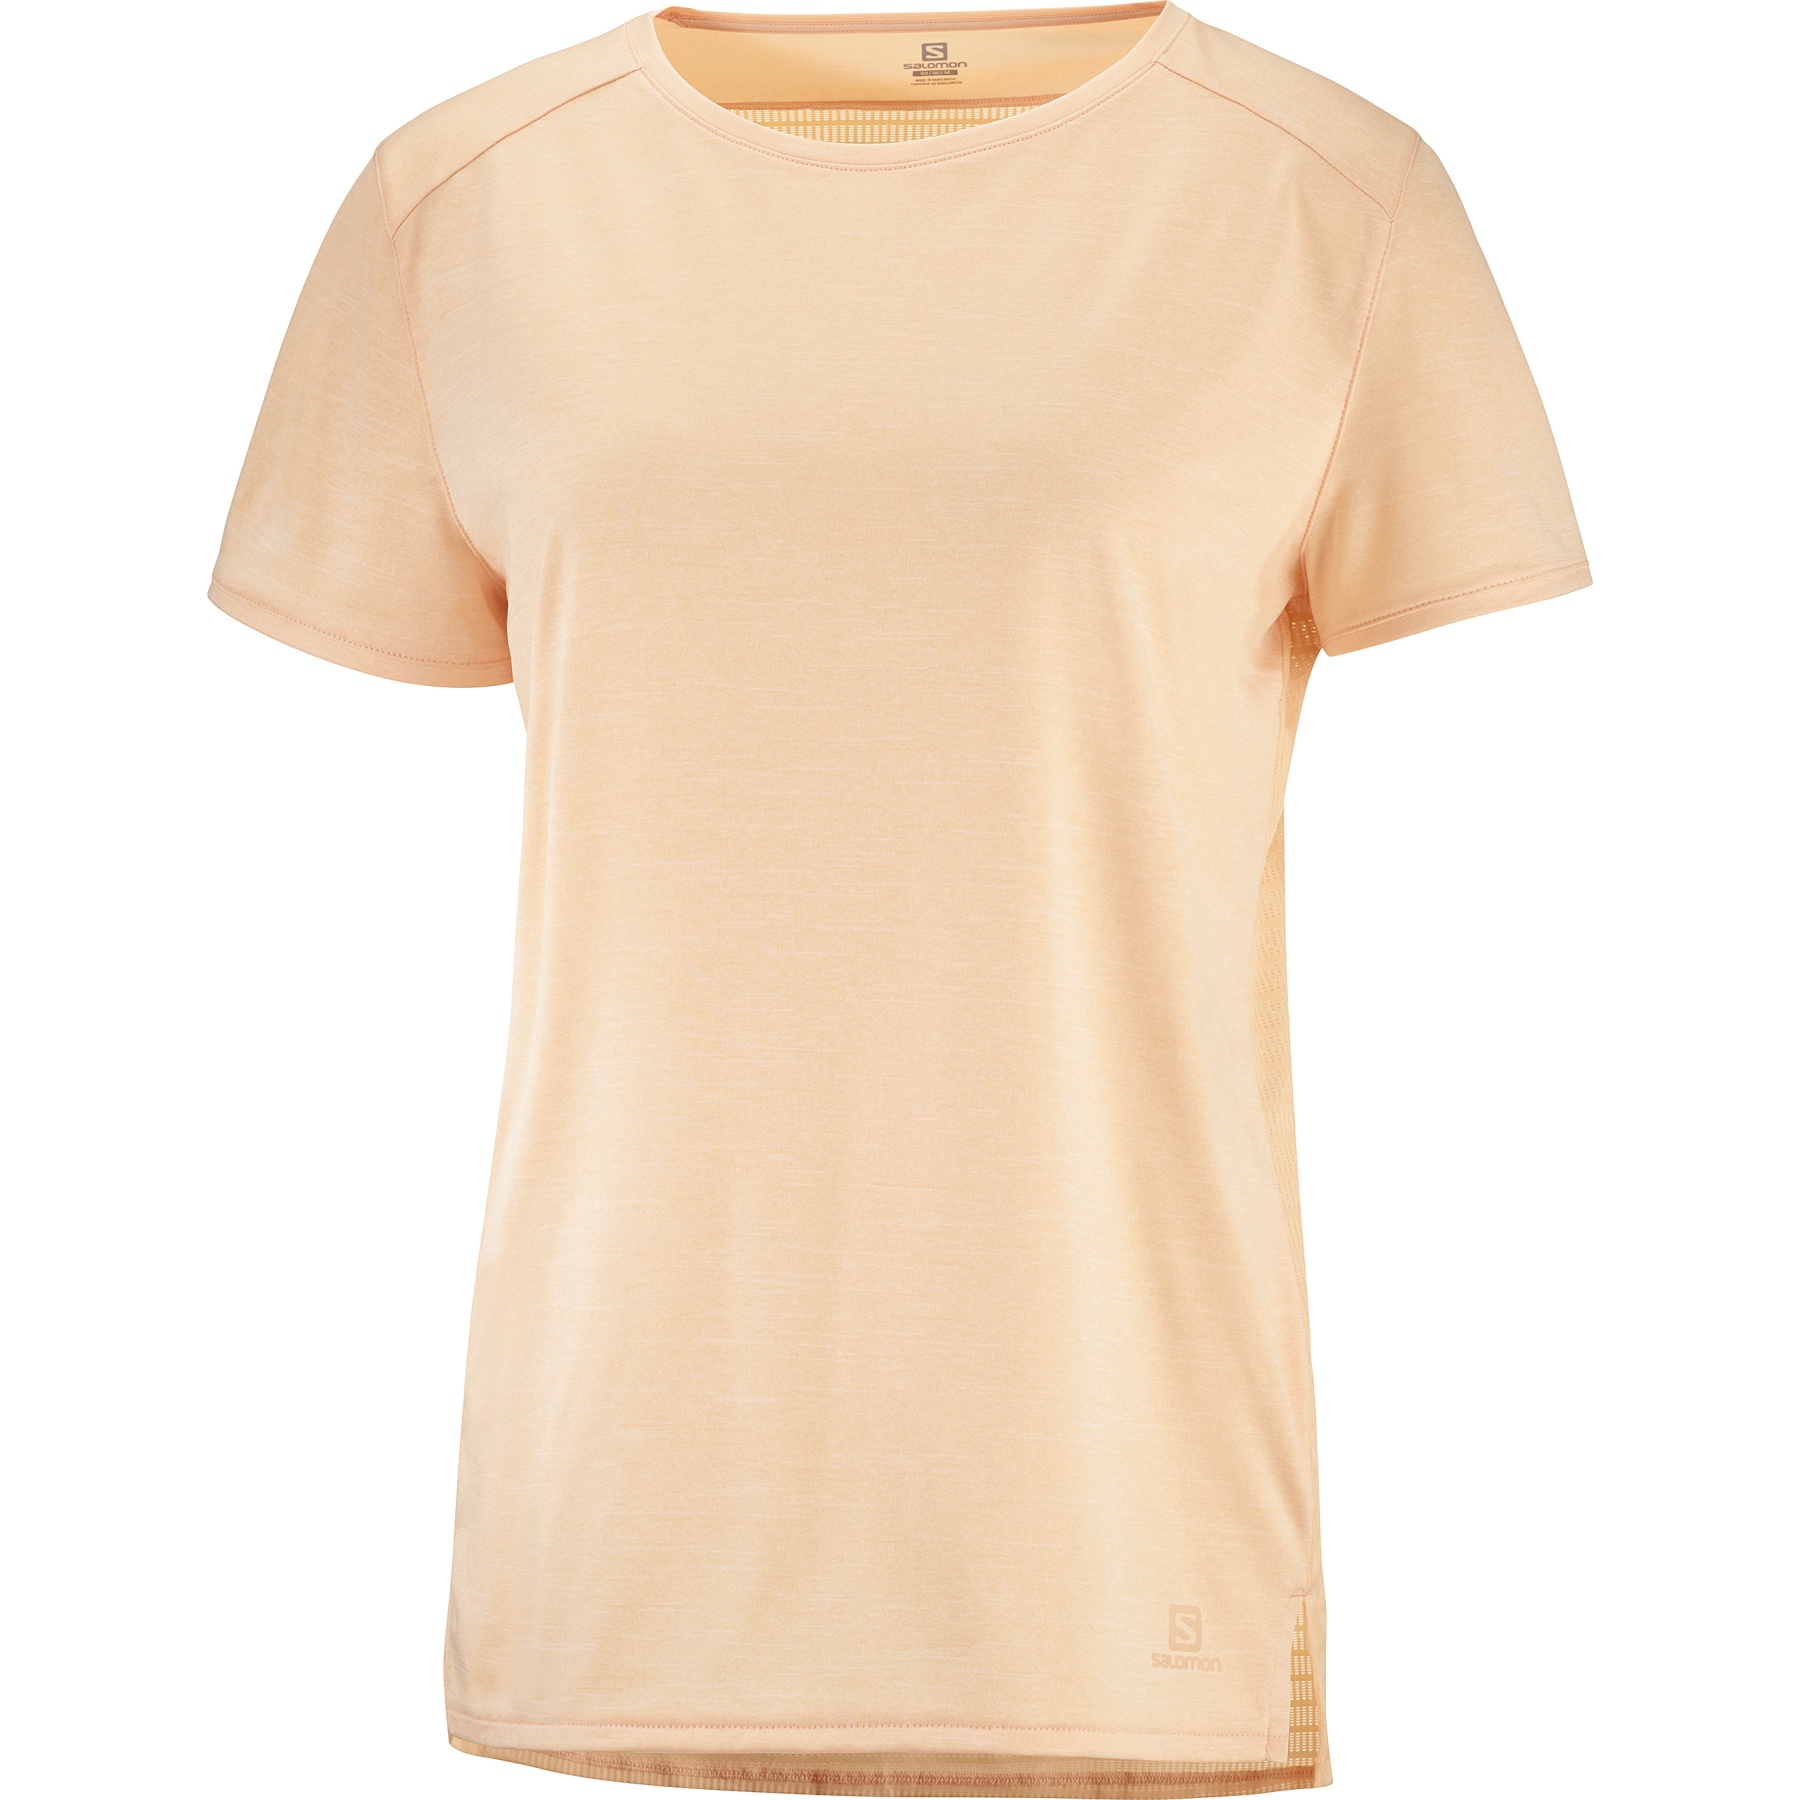 Produktbild von Salomon Outline Summer T-Shirt Damen - apricot ice